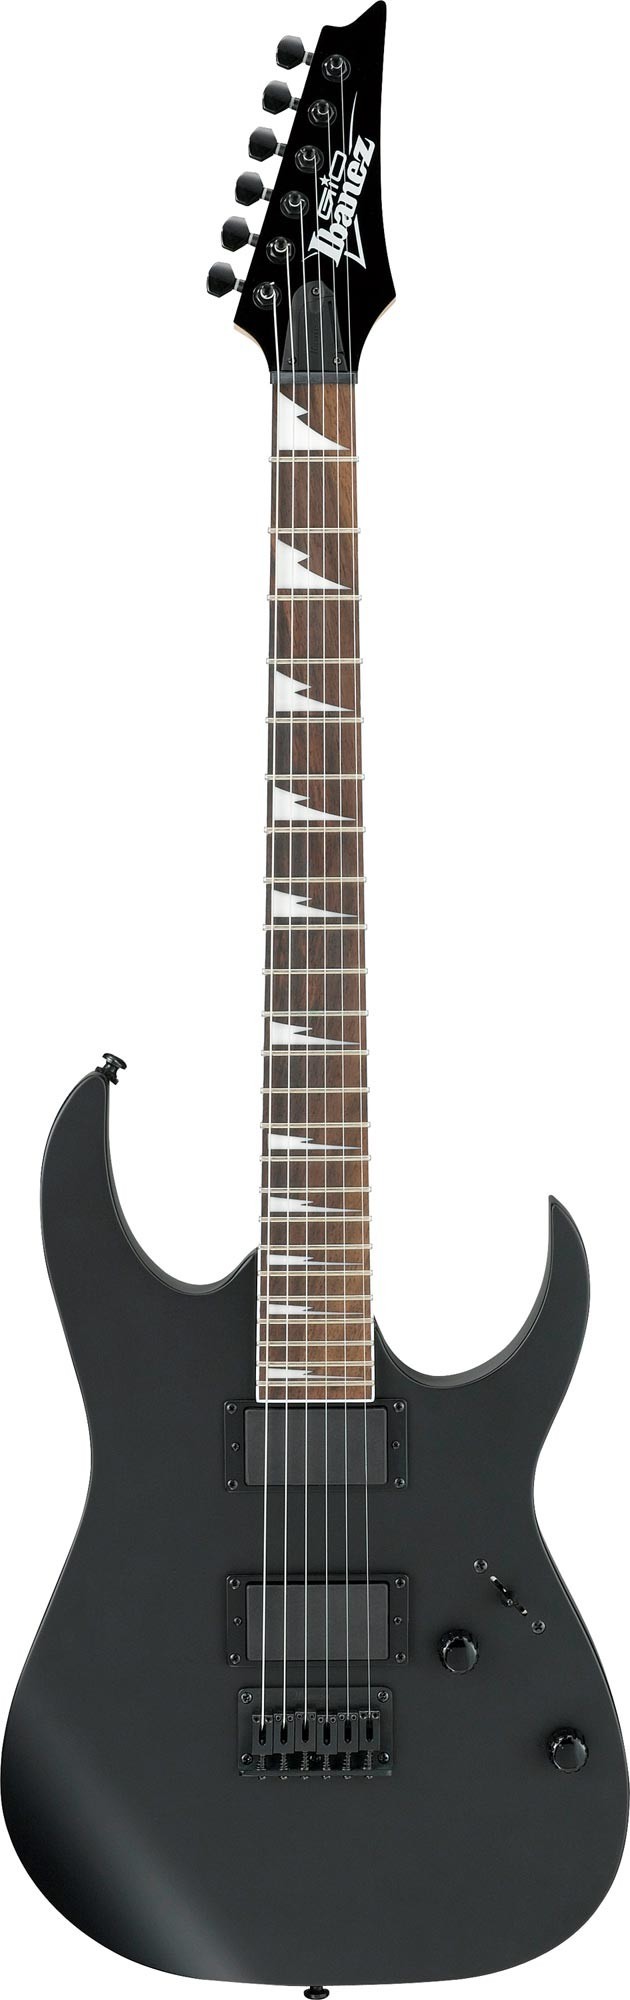 Не можна не відзначити двох інших провідних виробників гітар, Ibanez і Jackson, знаменитих своїми інструментами з формою Superstrat